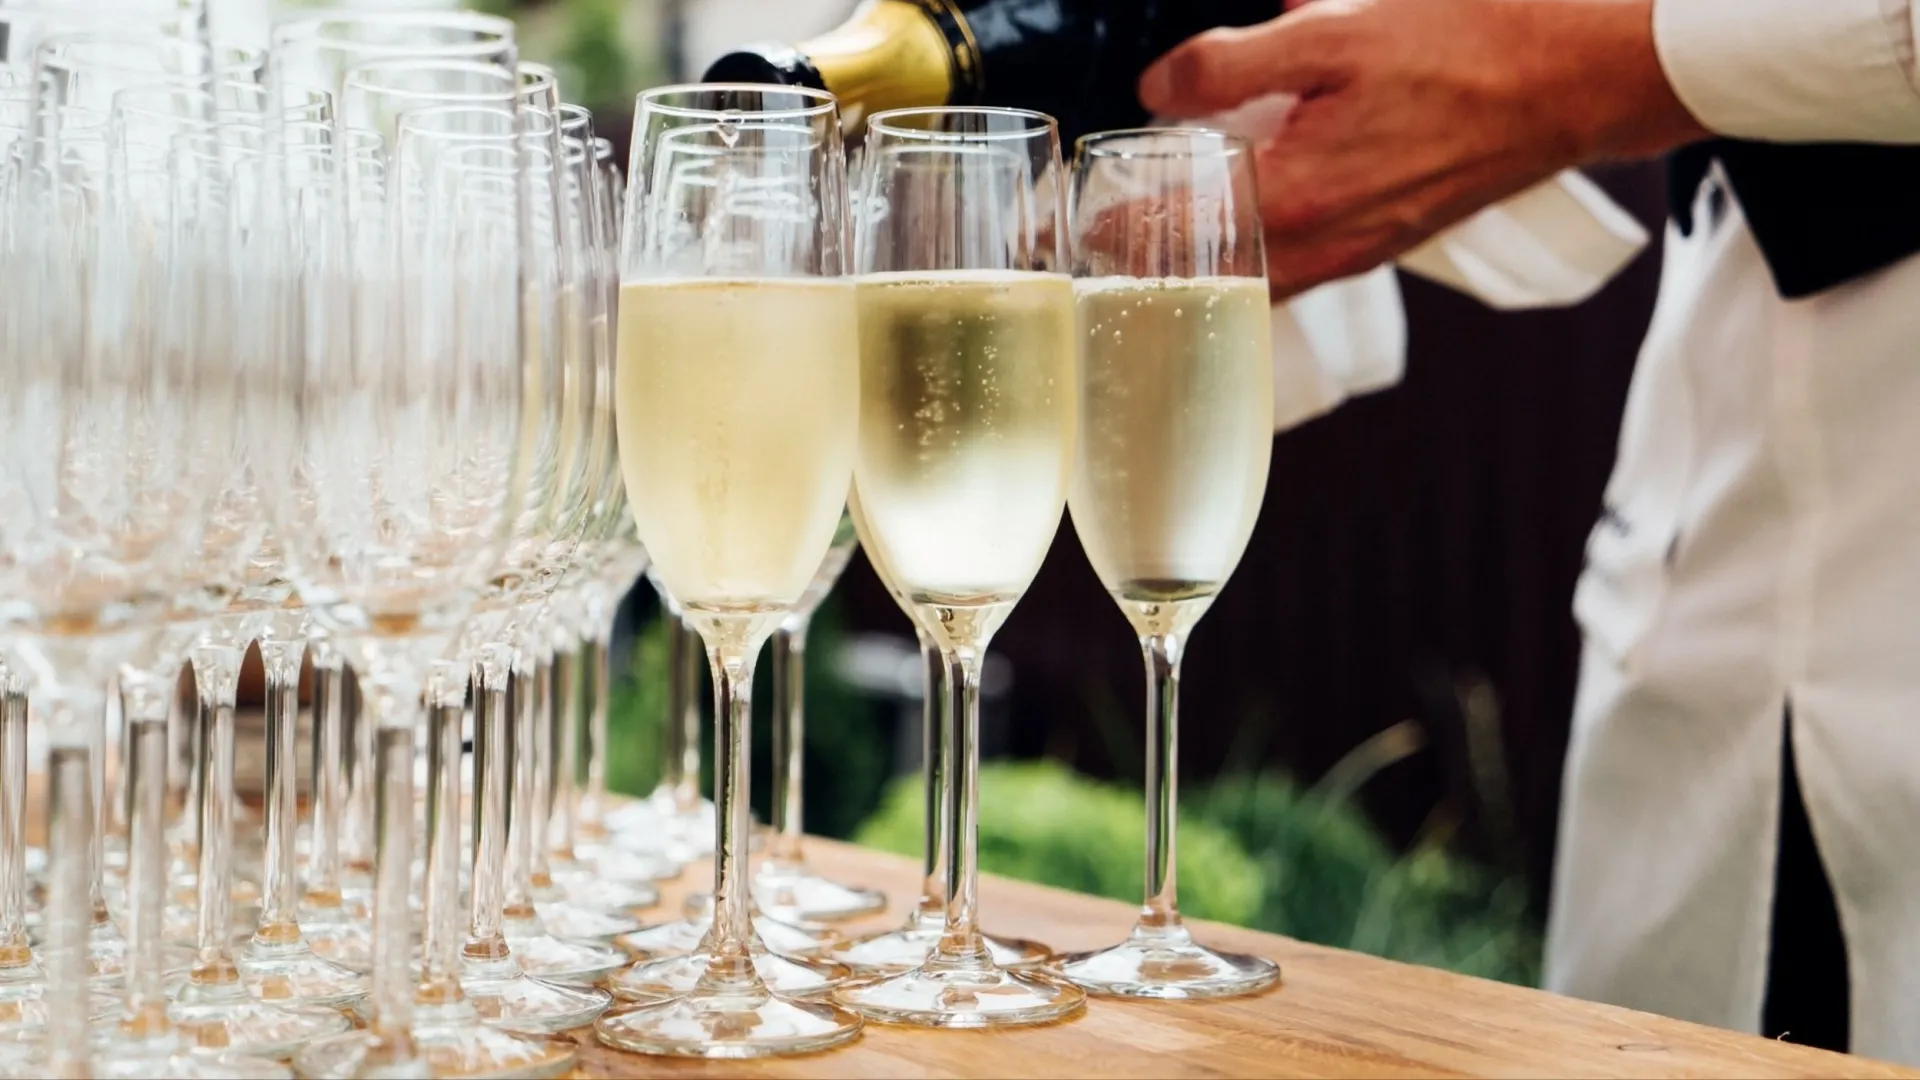 Шампанское обойдется дороже. Фото: Shebeko / Shutterstock / Fotodom